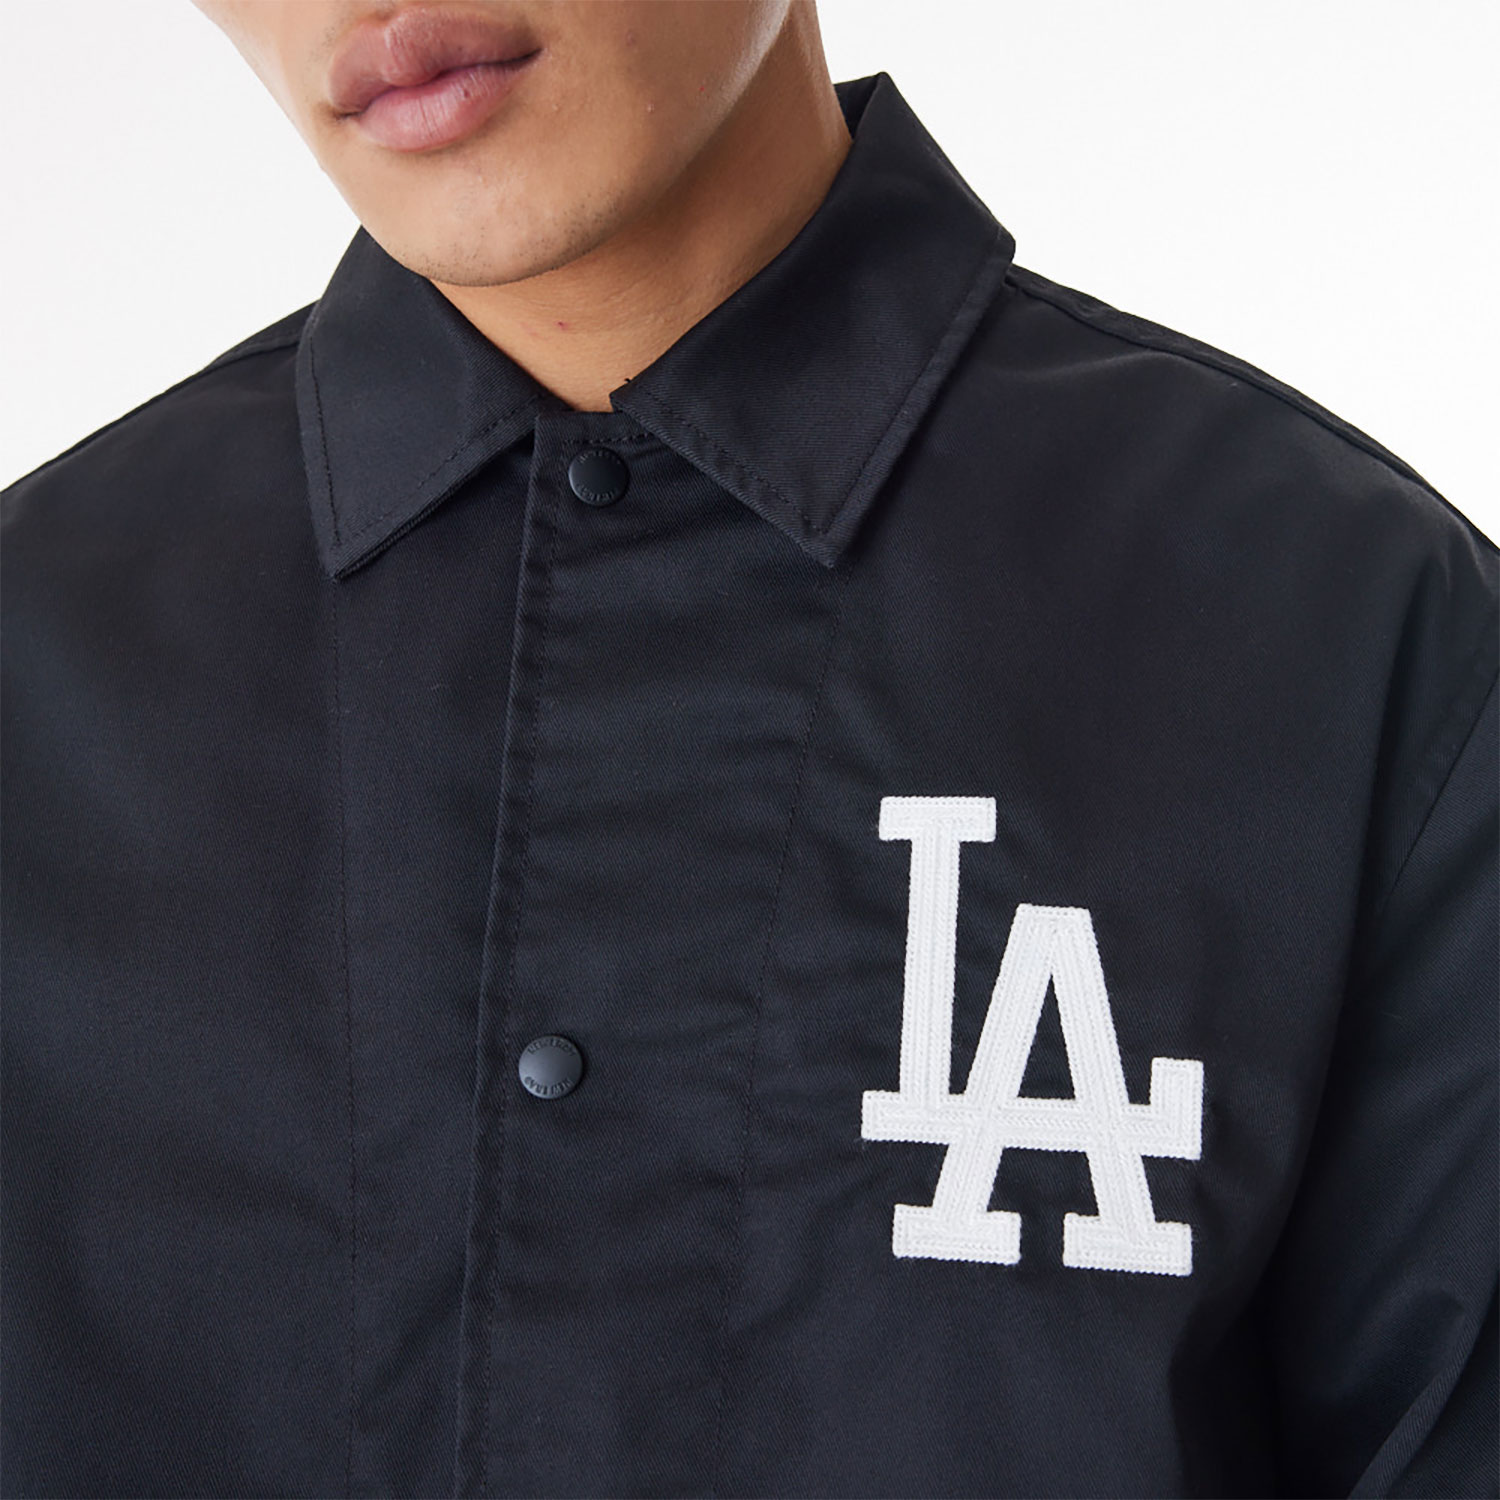 LA Dodgers New Era Korea MLB Coach Black Jacket